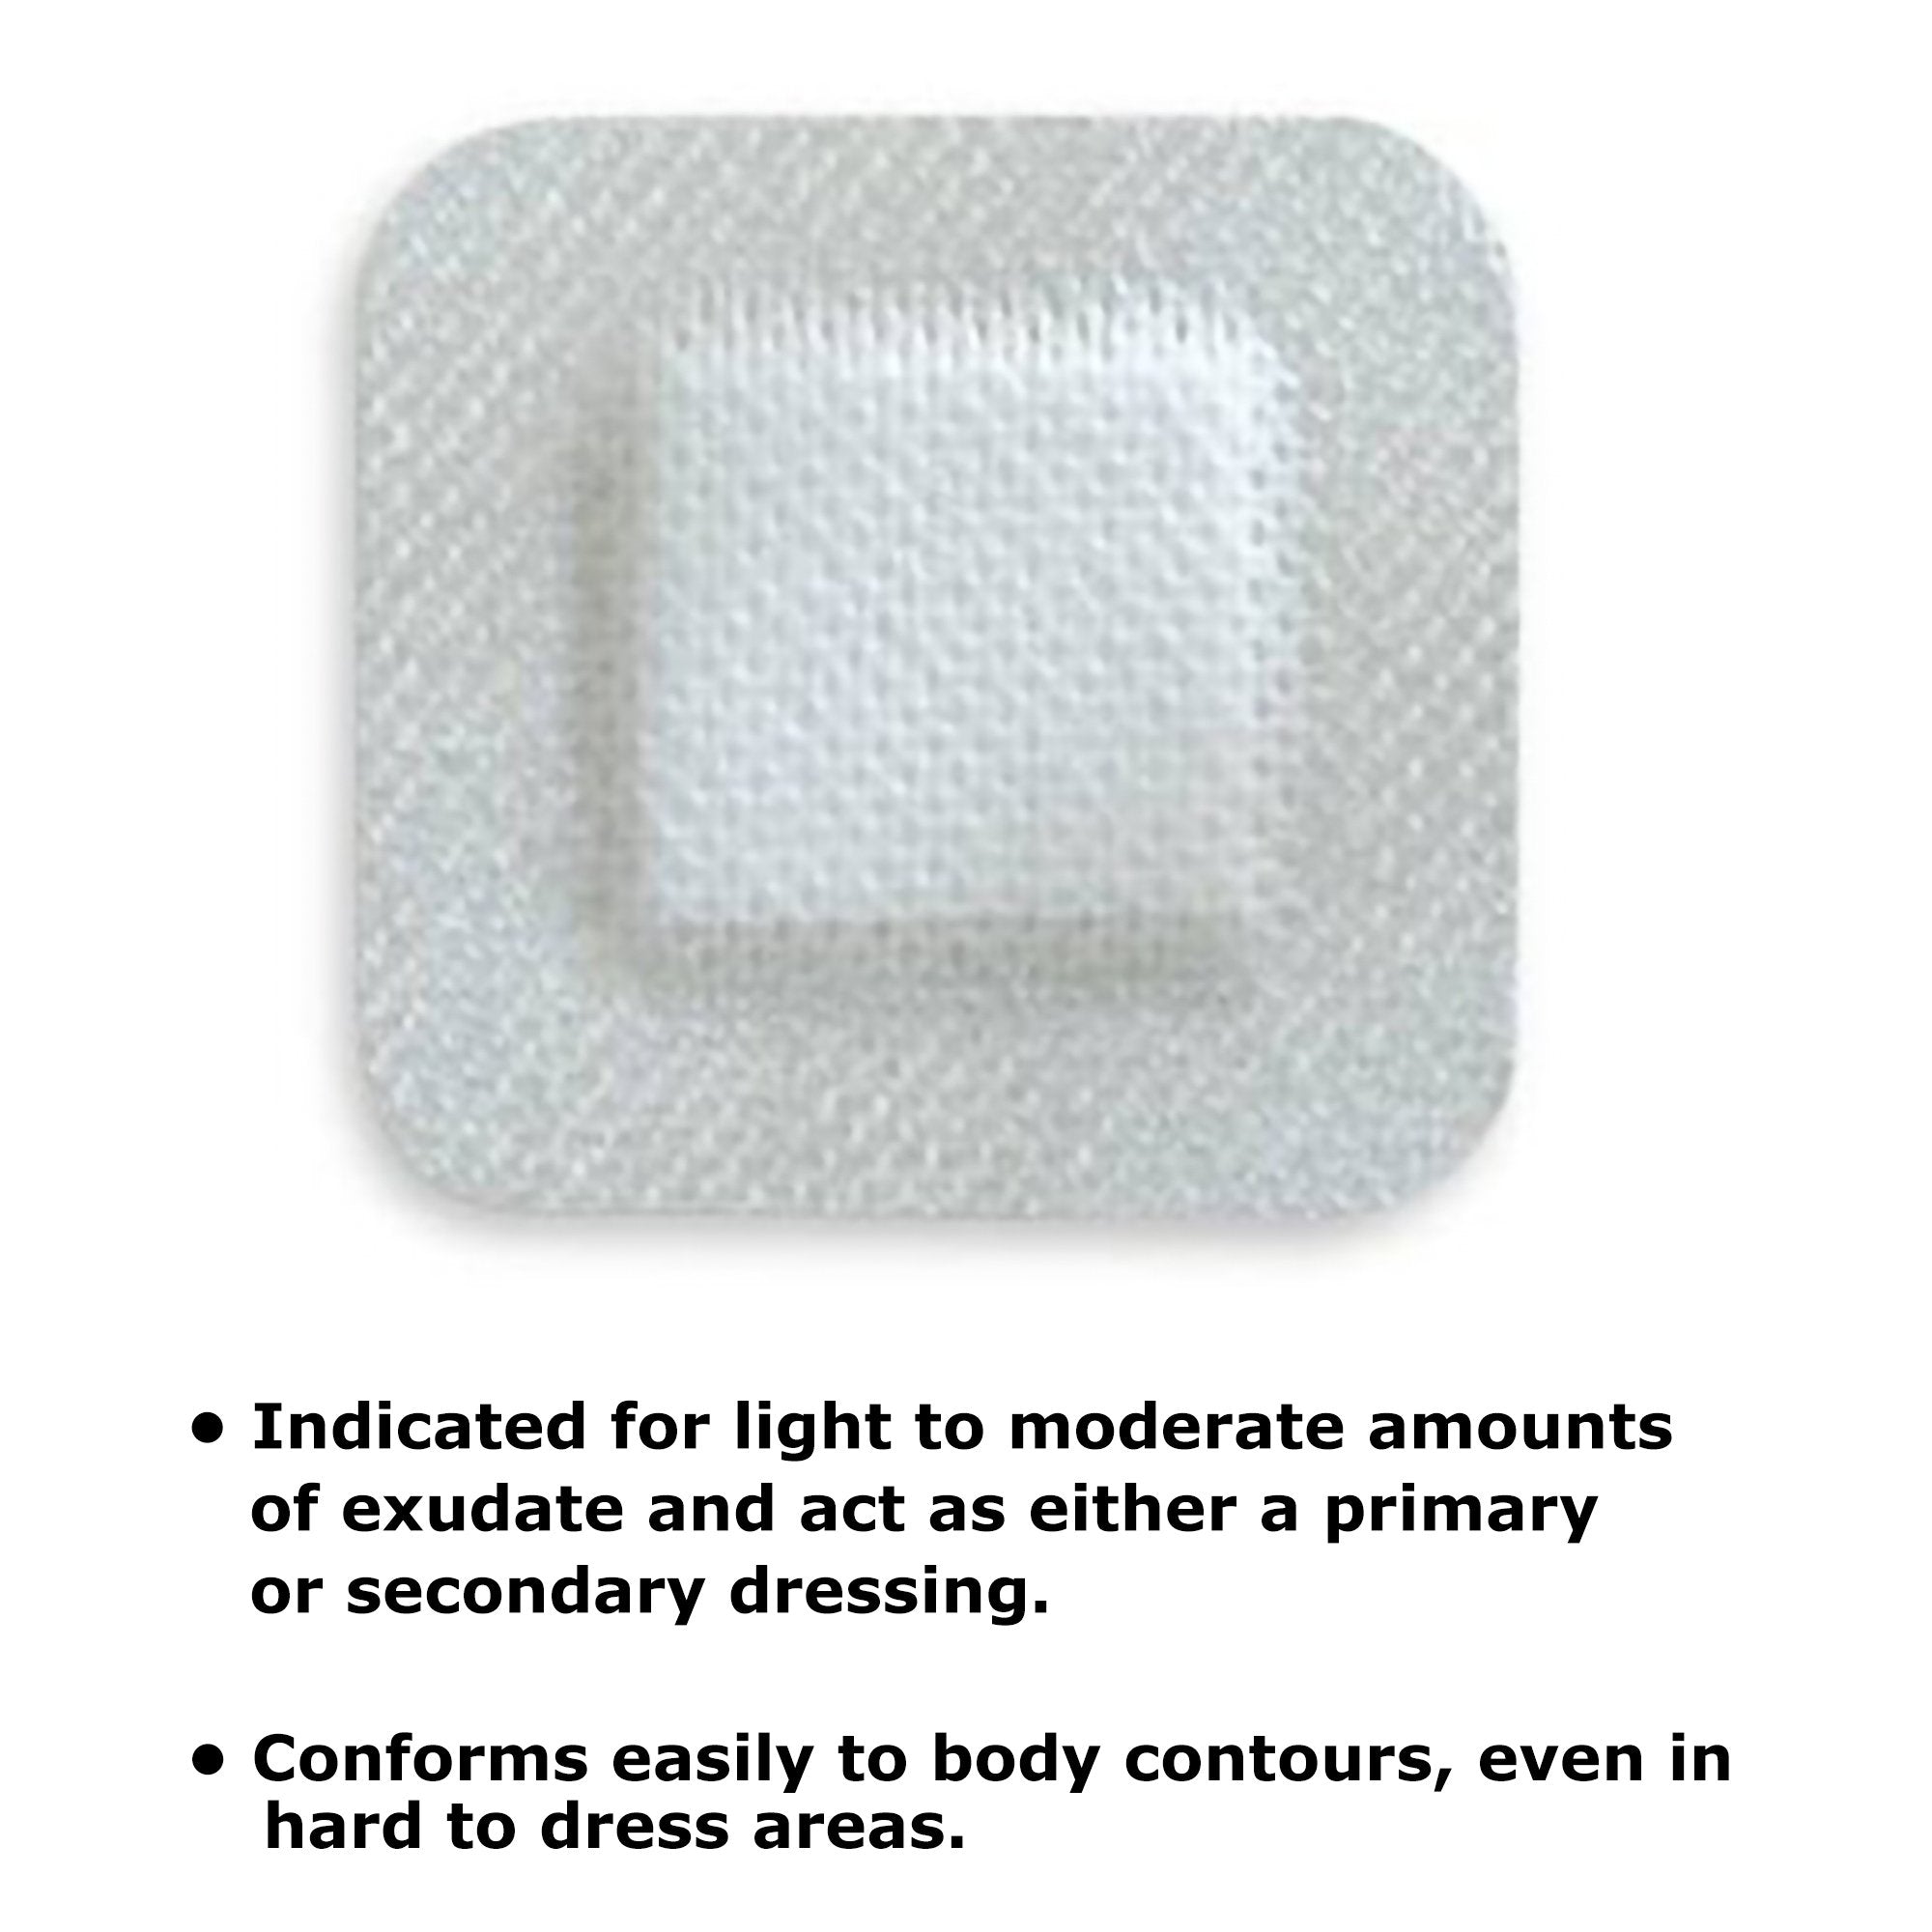 Adhesive Dressing McKesson 4 X 4 Inch Nonwoven Gauze Square White NonSterile